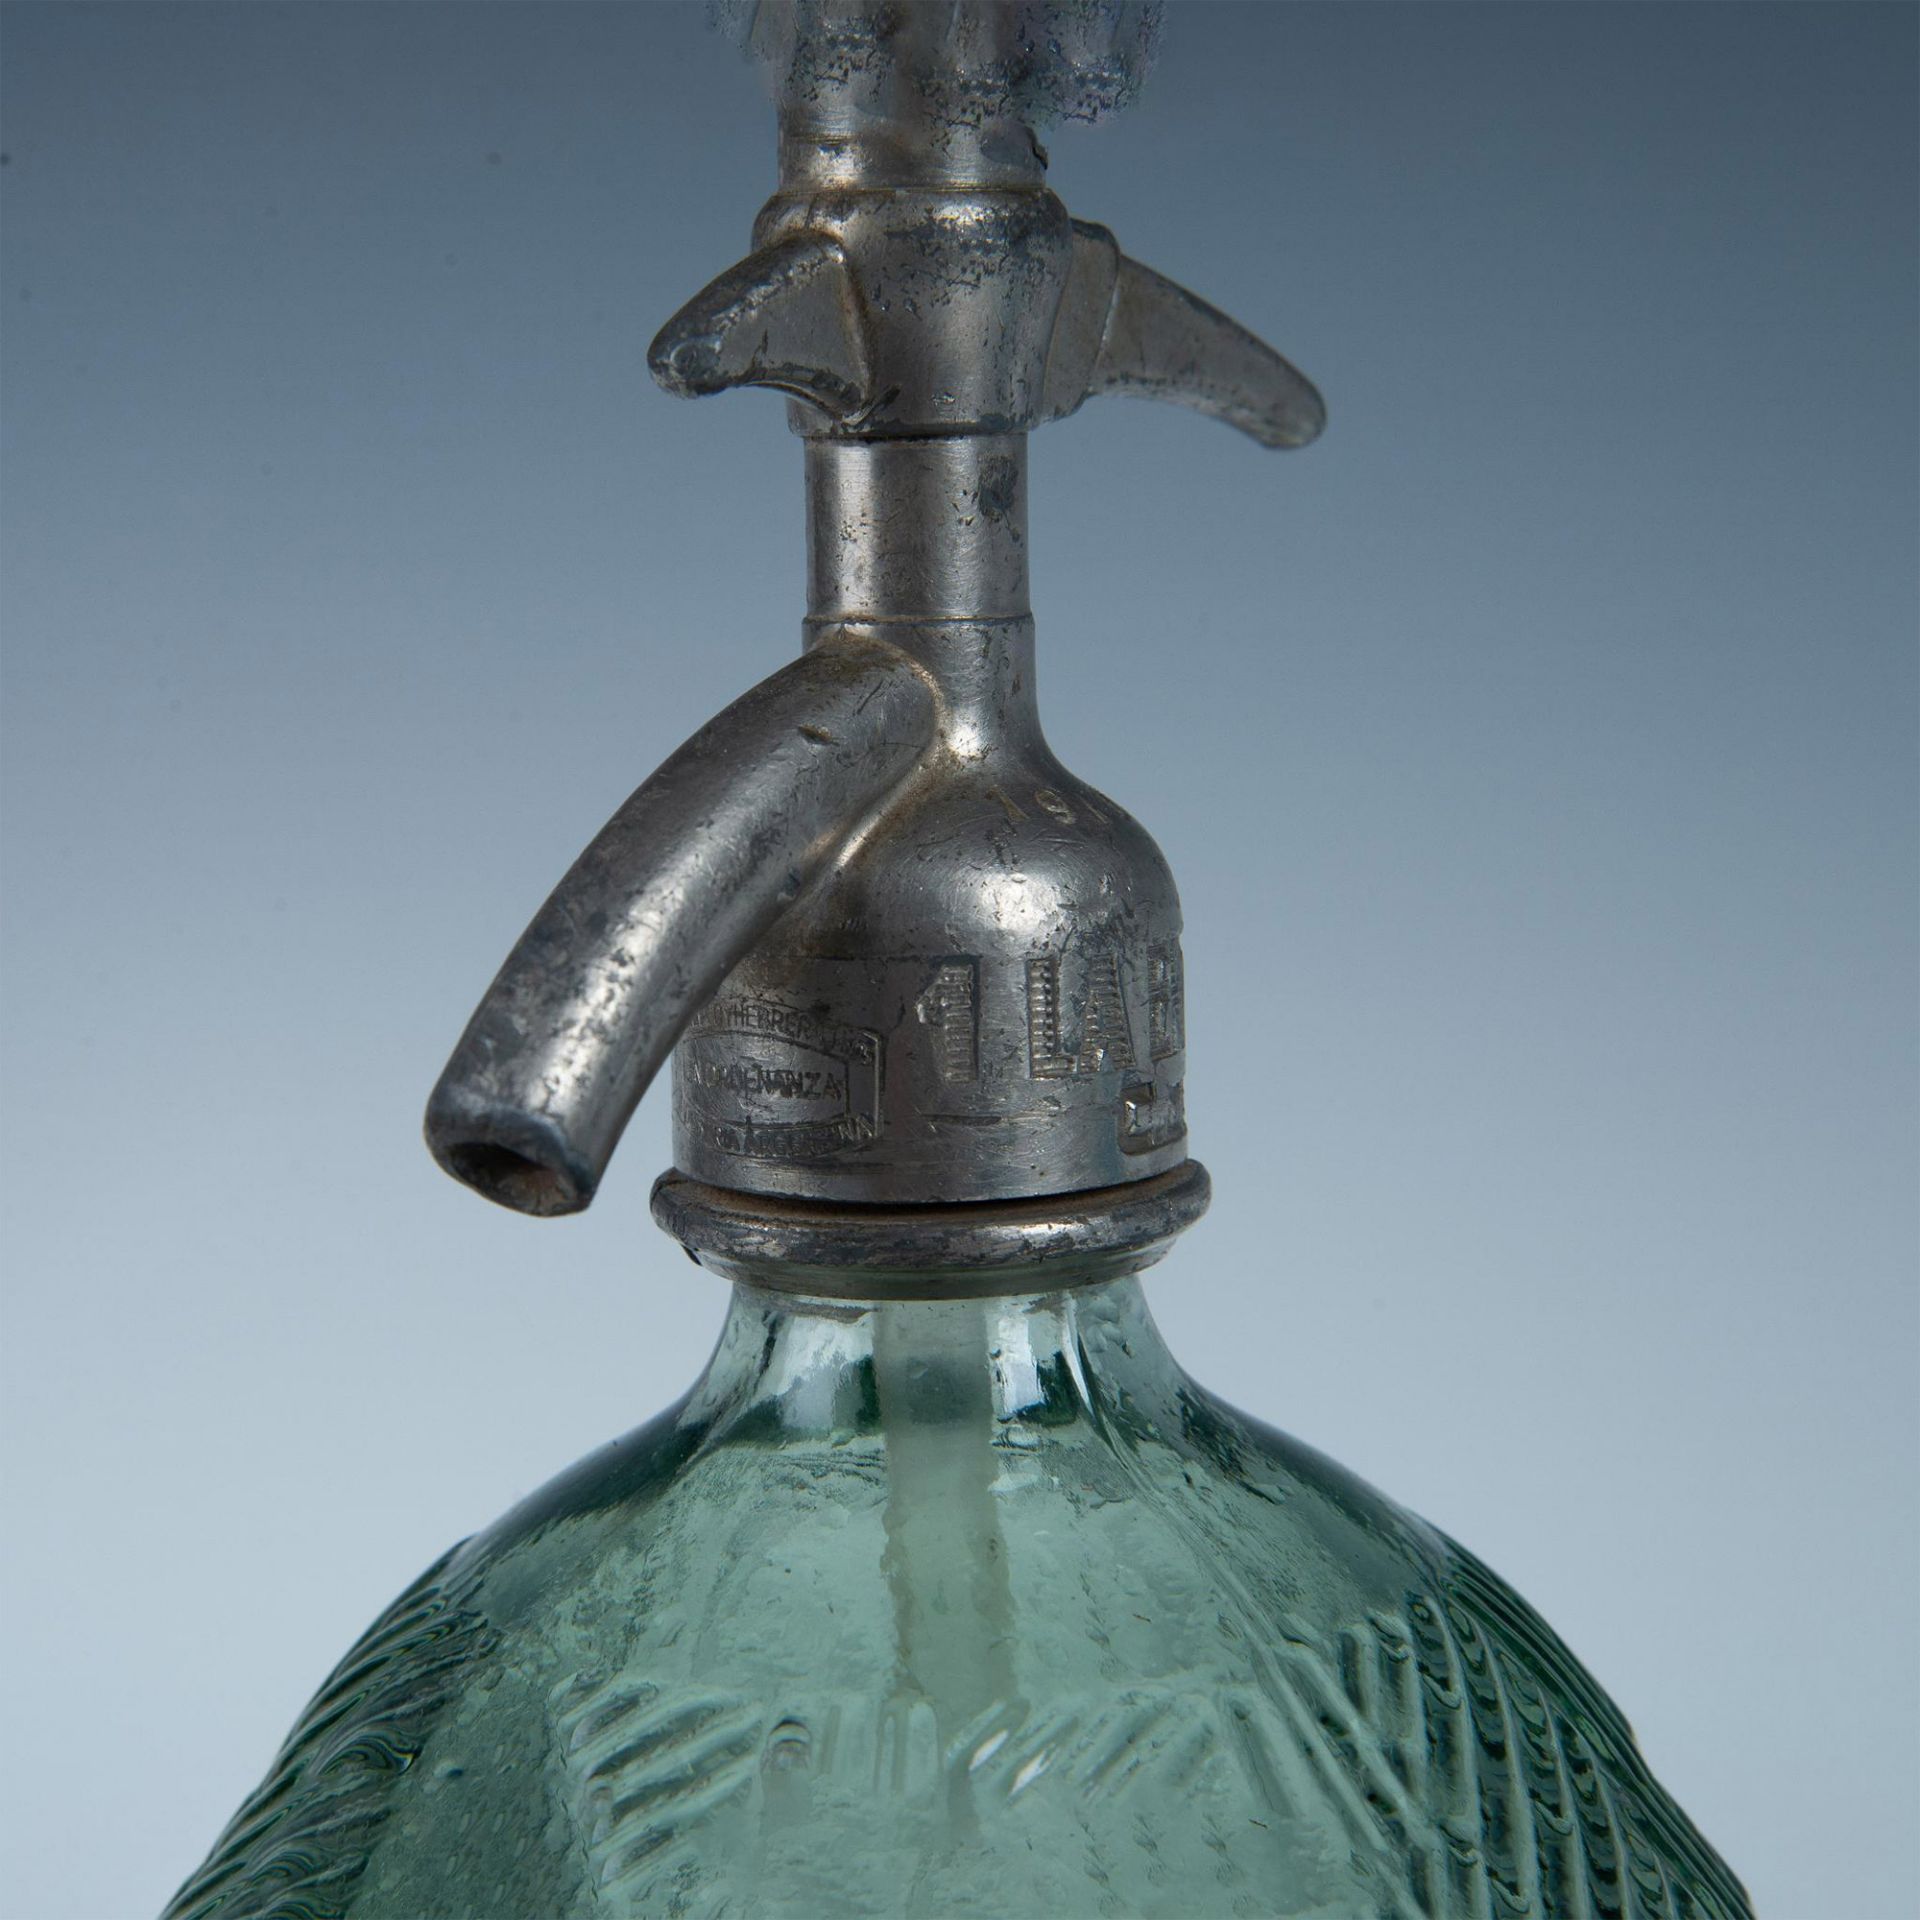 Antique Seltzer Bottle Gonzalez Hnos, Argentina - Bild 5 aus 7